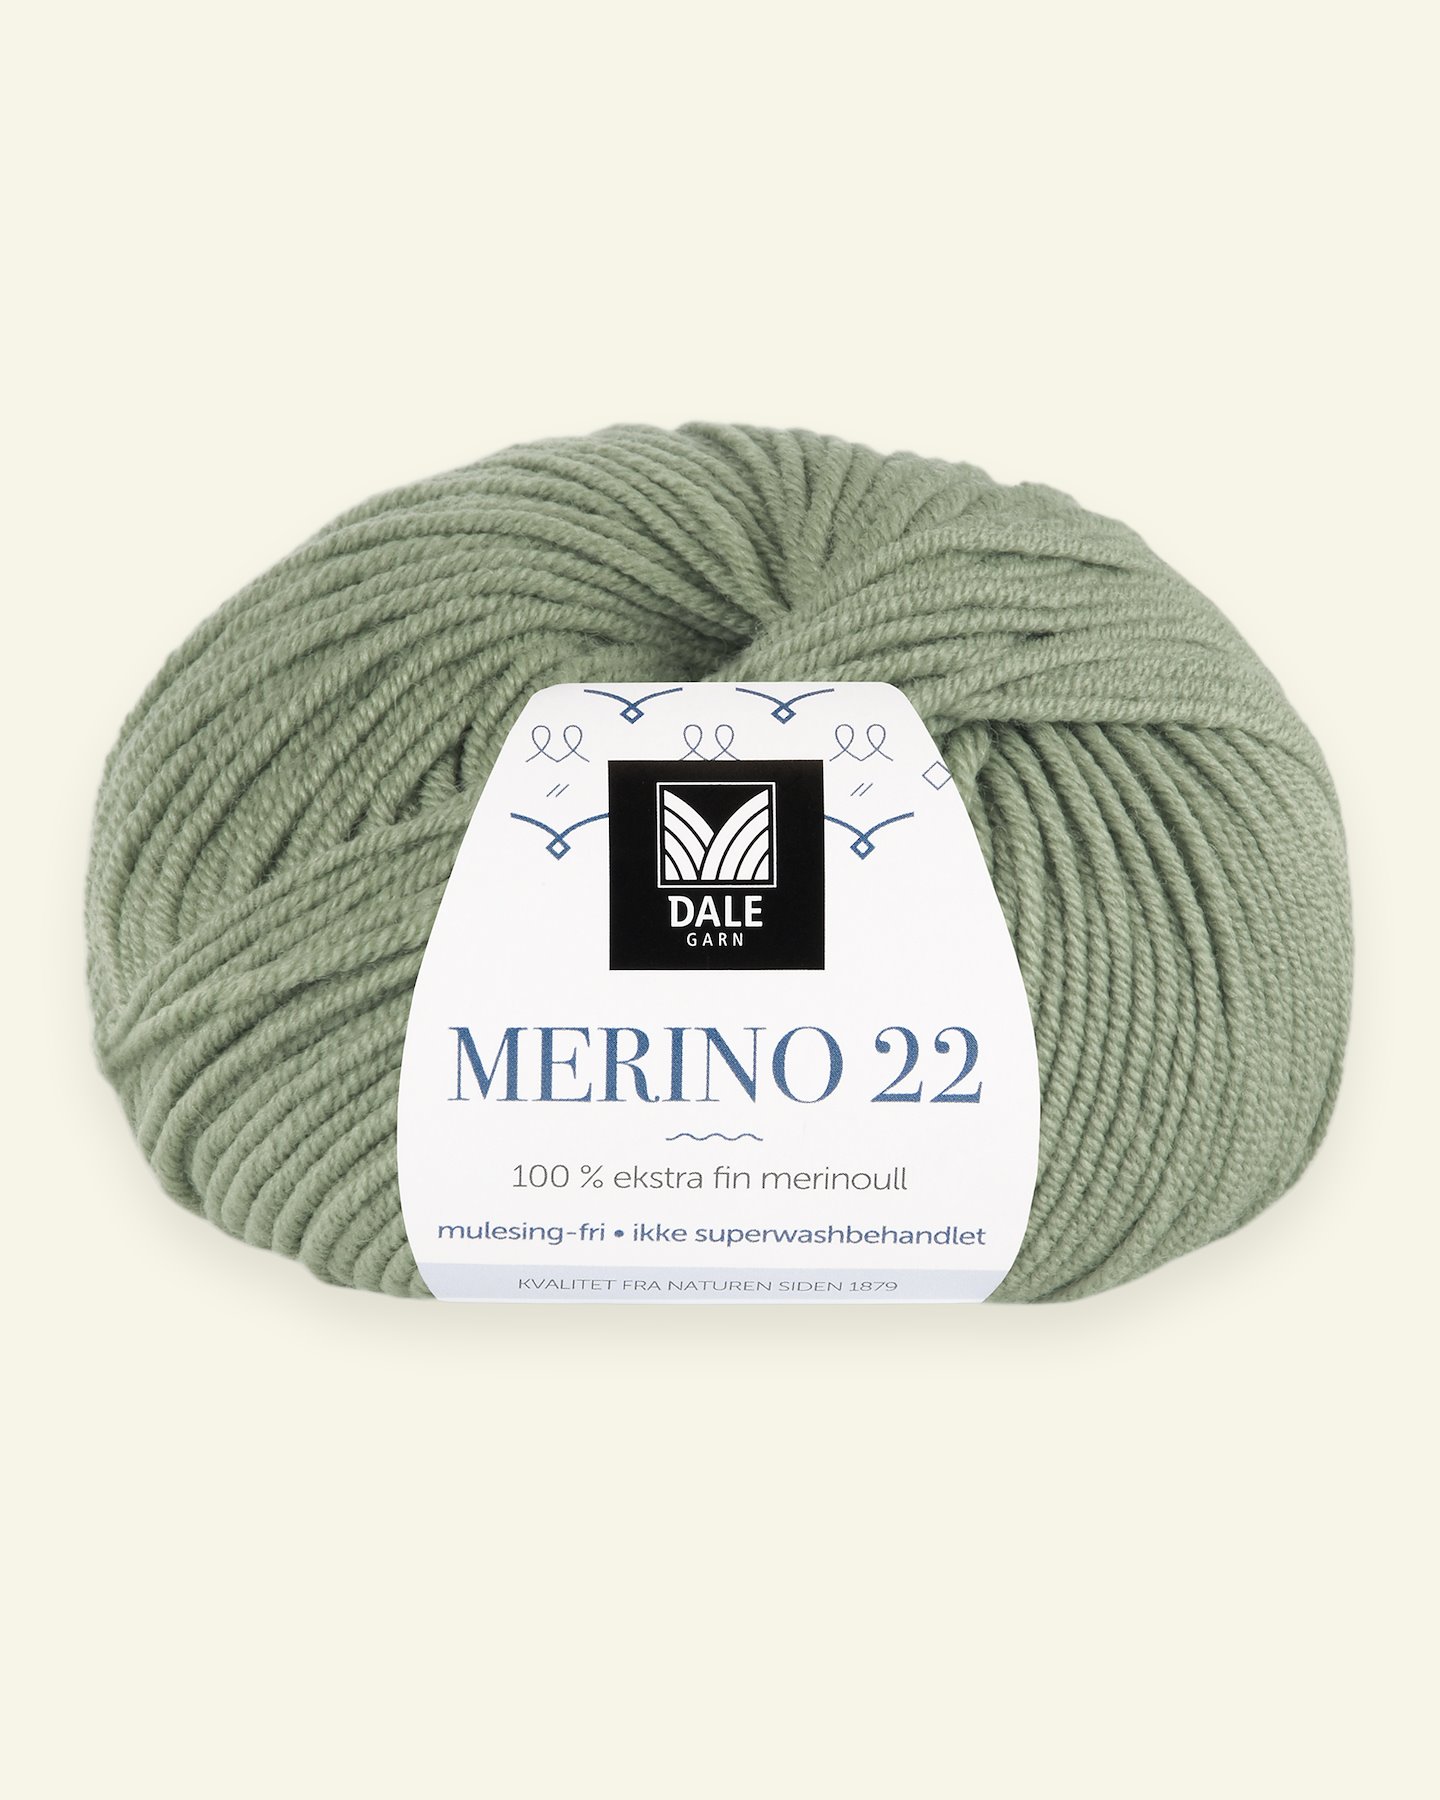 Dale Garn, 100% extra fine merino wool yarn, "Merino 22", jadegreen (2013) 90000374_pack